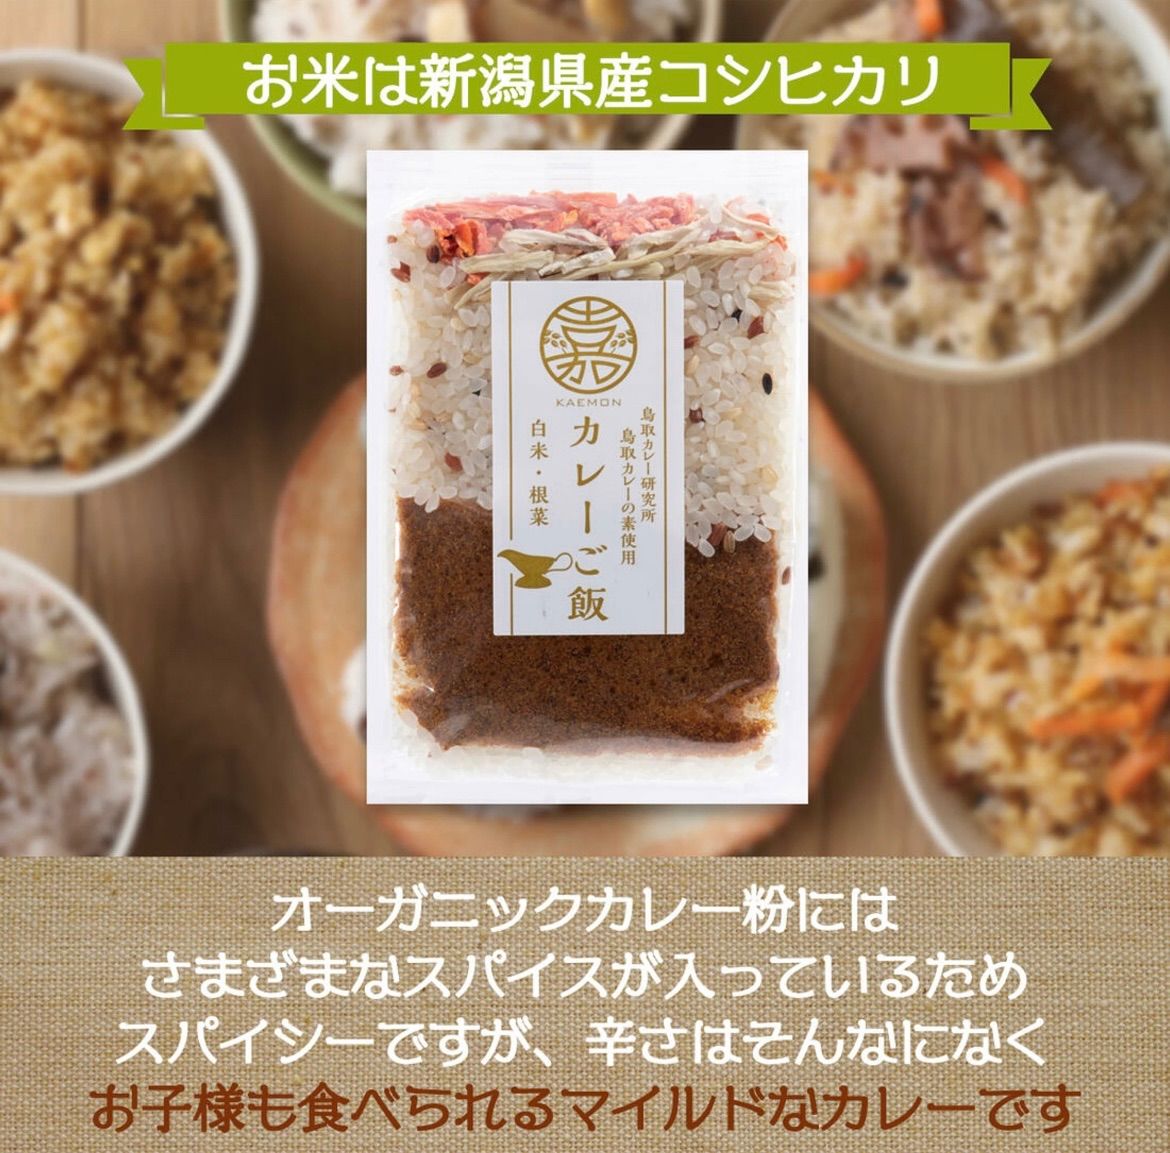 米 カレーご飯 白米 根菜 168g 北陸 新潟 カレー コシヒカリ - メルカリ